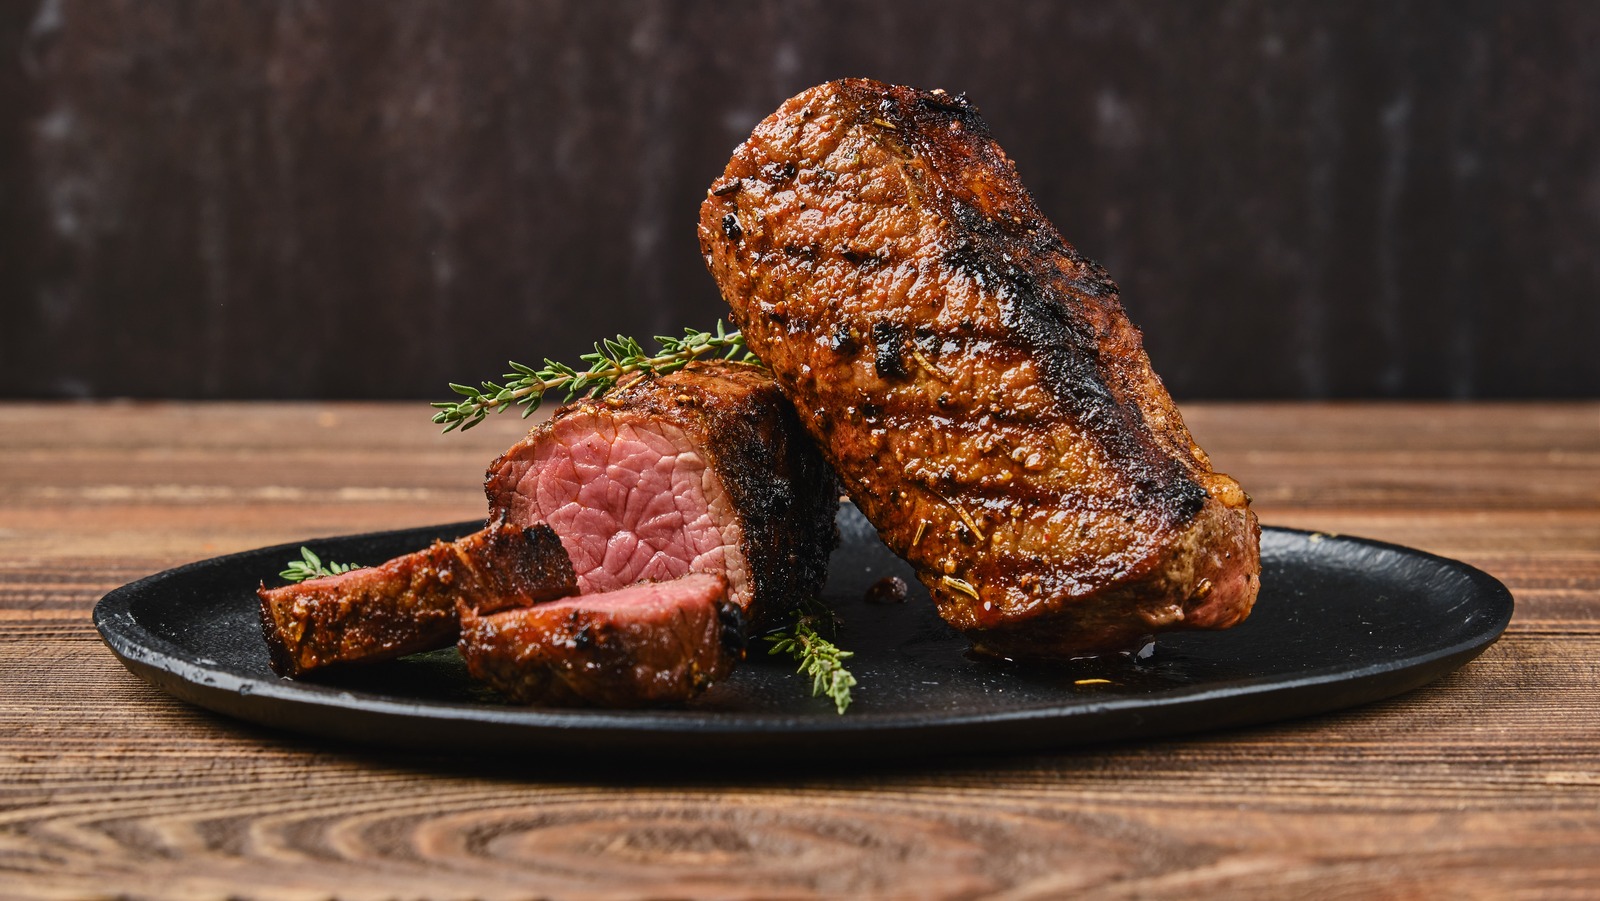 يعتبر ملح الطعام خيارًا باهتًا لتتبيل شرائح اللحم